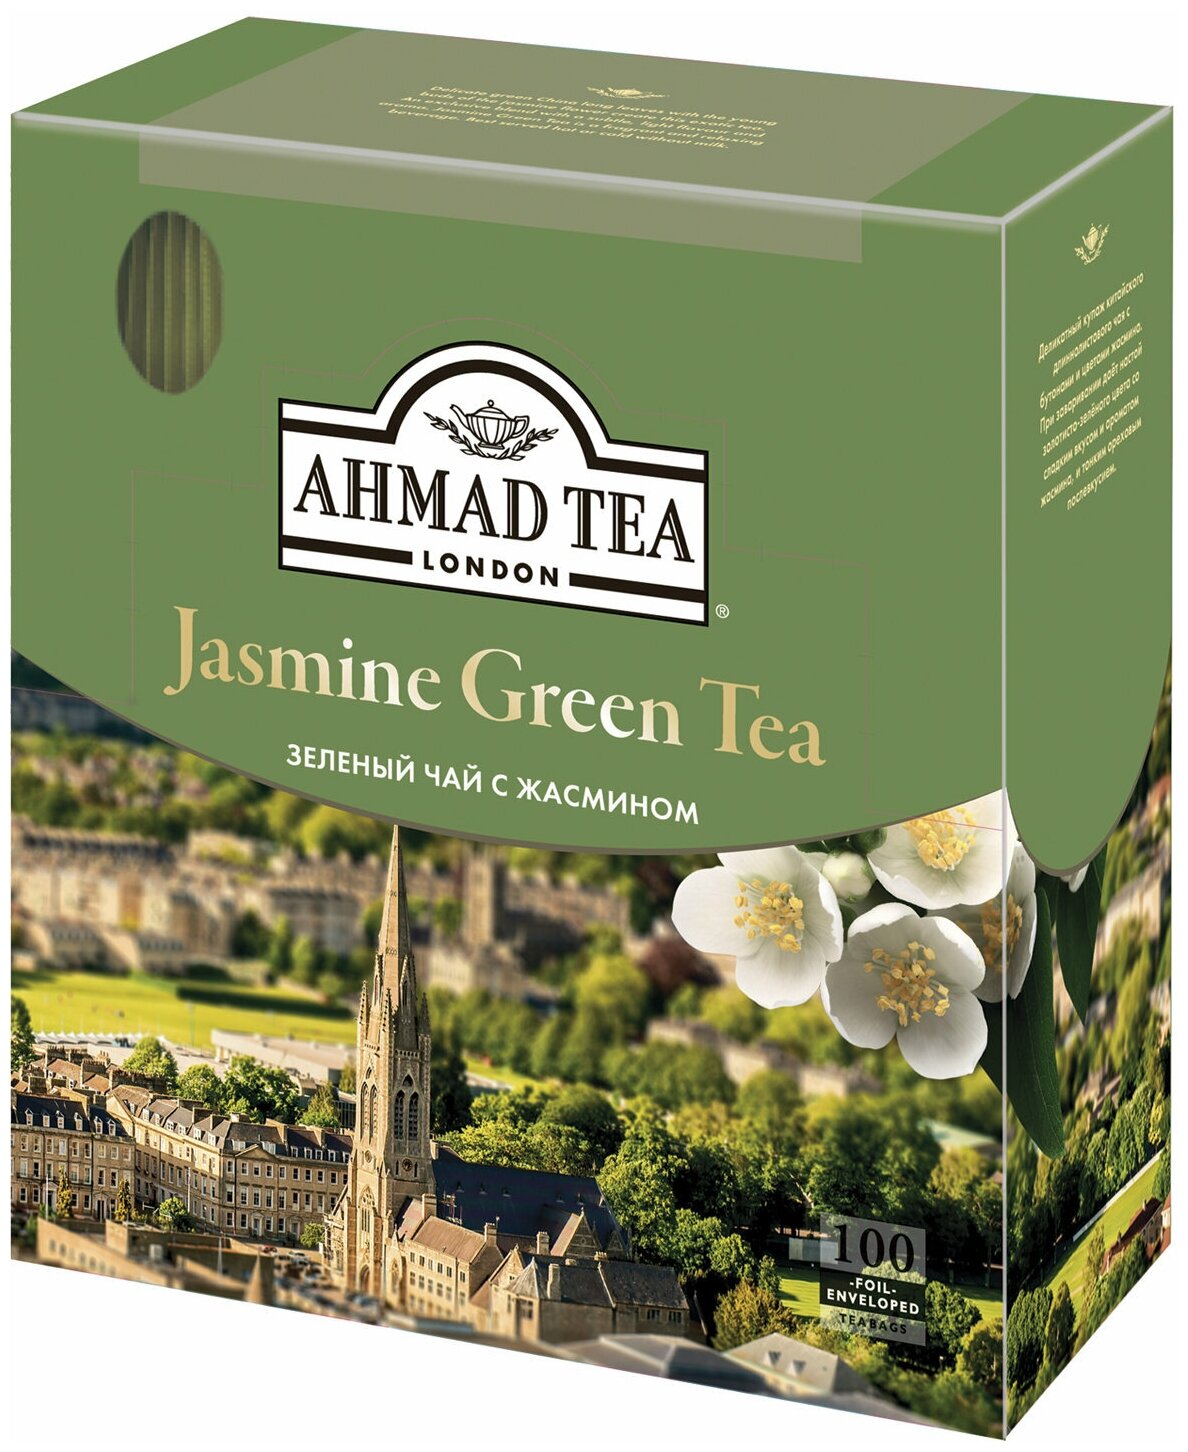 Чай AHMAD (Ахмад) "Jasmine Green Tea", зелёный с жасмином, 100 пакетиков по 2 г, 475i-08 - 1 шт.